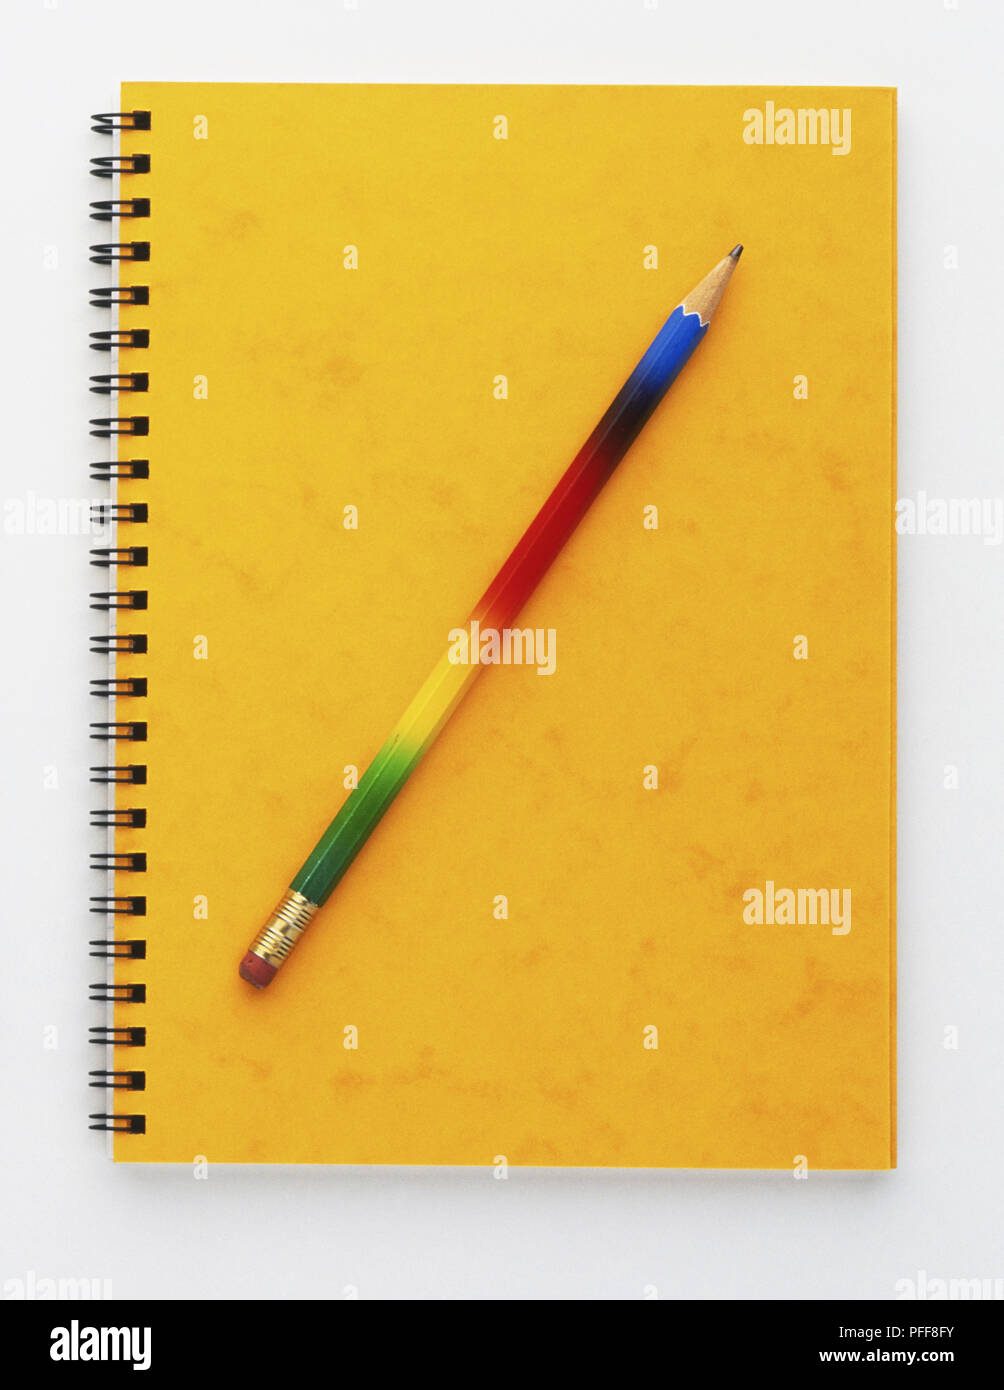 Bleistift gelegt über Notepad mit gelben Deckel, Vorderansicht Stockfoto